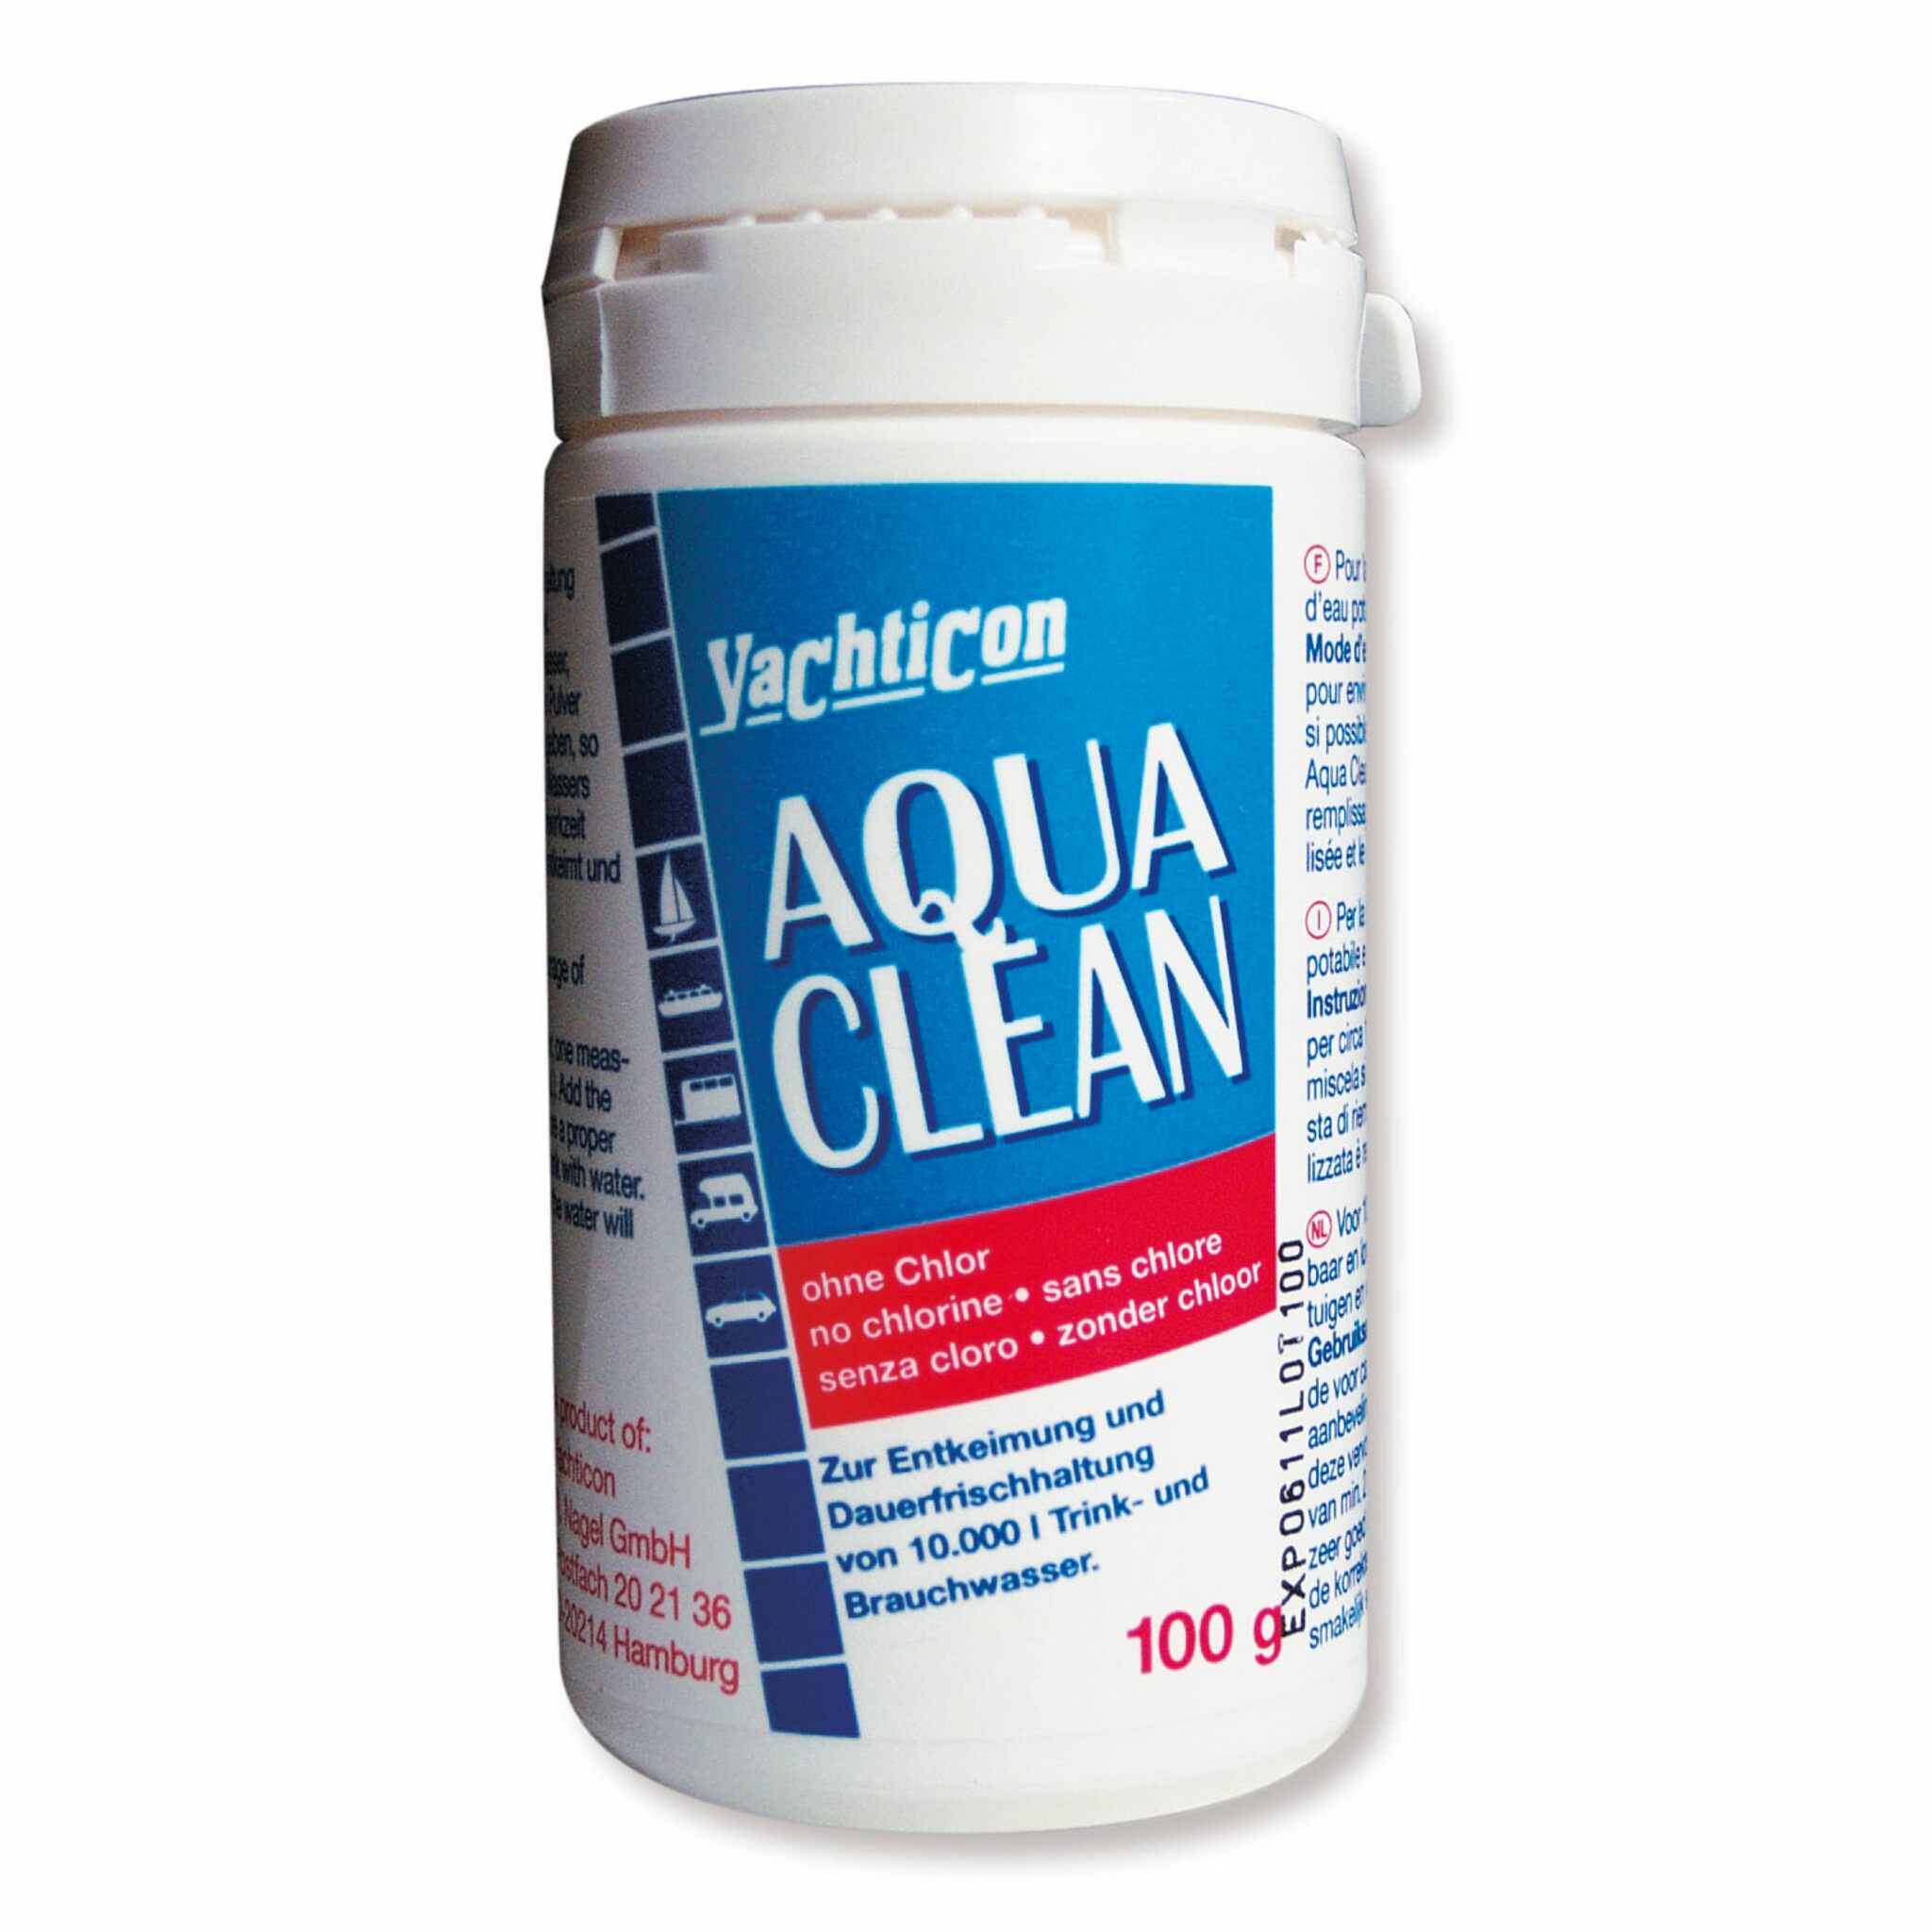 Yachticon Aqua Clean 100 g powder, enough for 10000 l